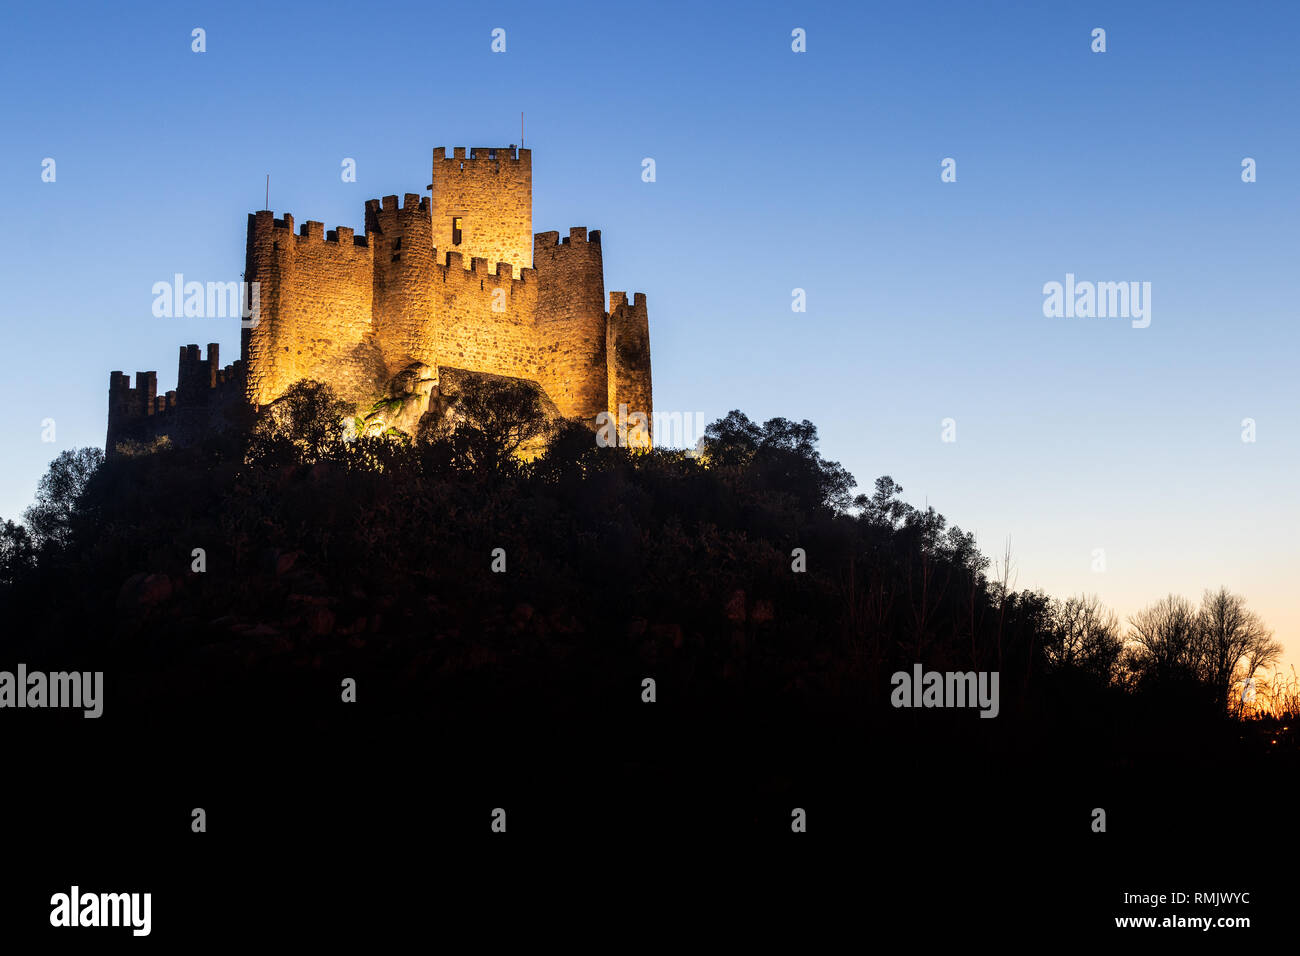 Almourol, Portugal - Januar 12, 2019: almourol Schloss bei Dämmerung und durch künstliches Licht beleuchtet. Stockfoto